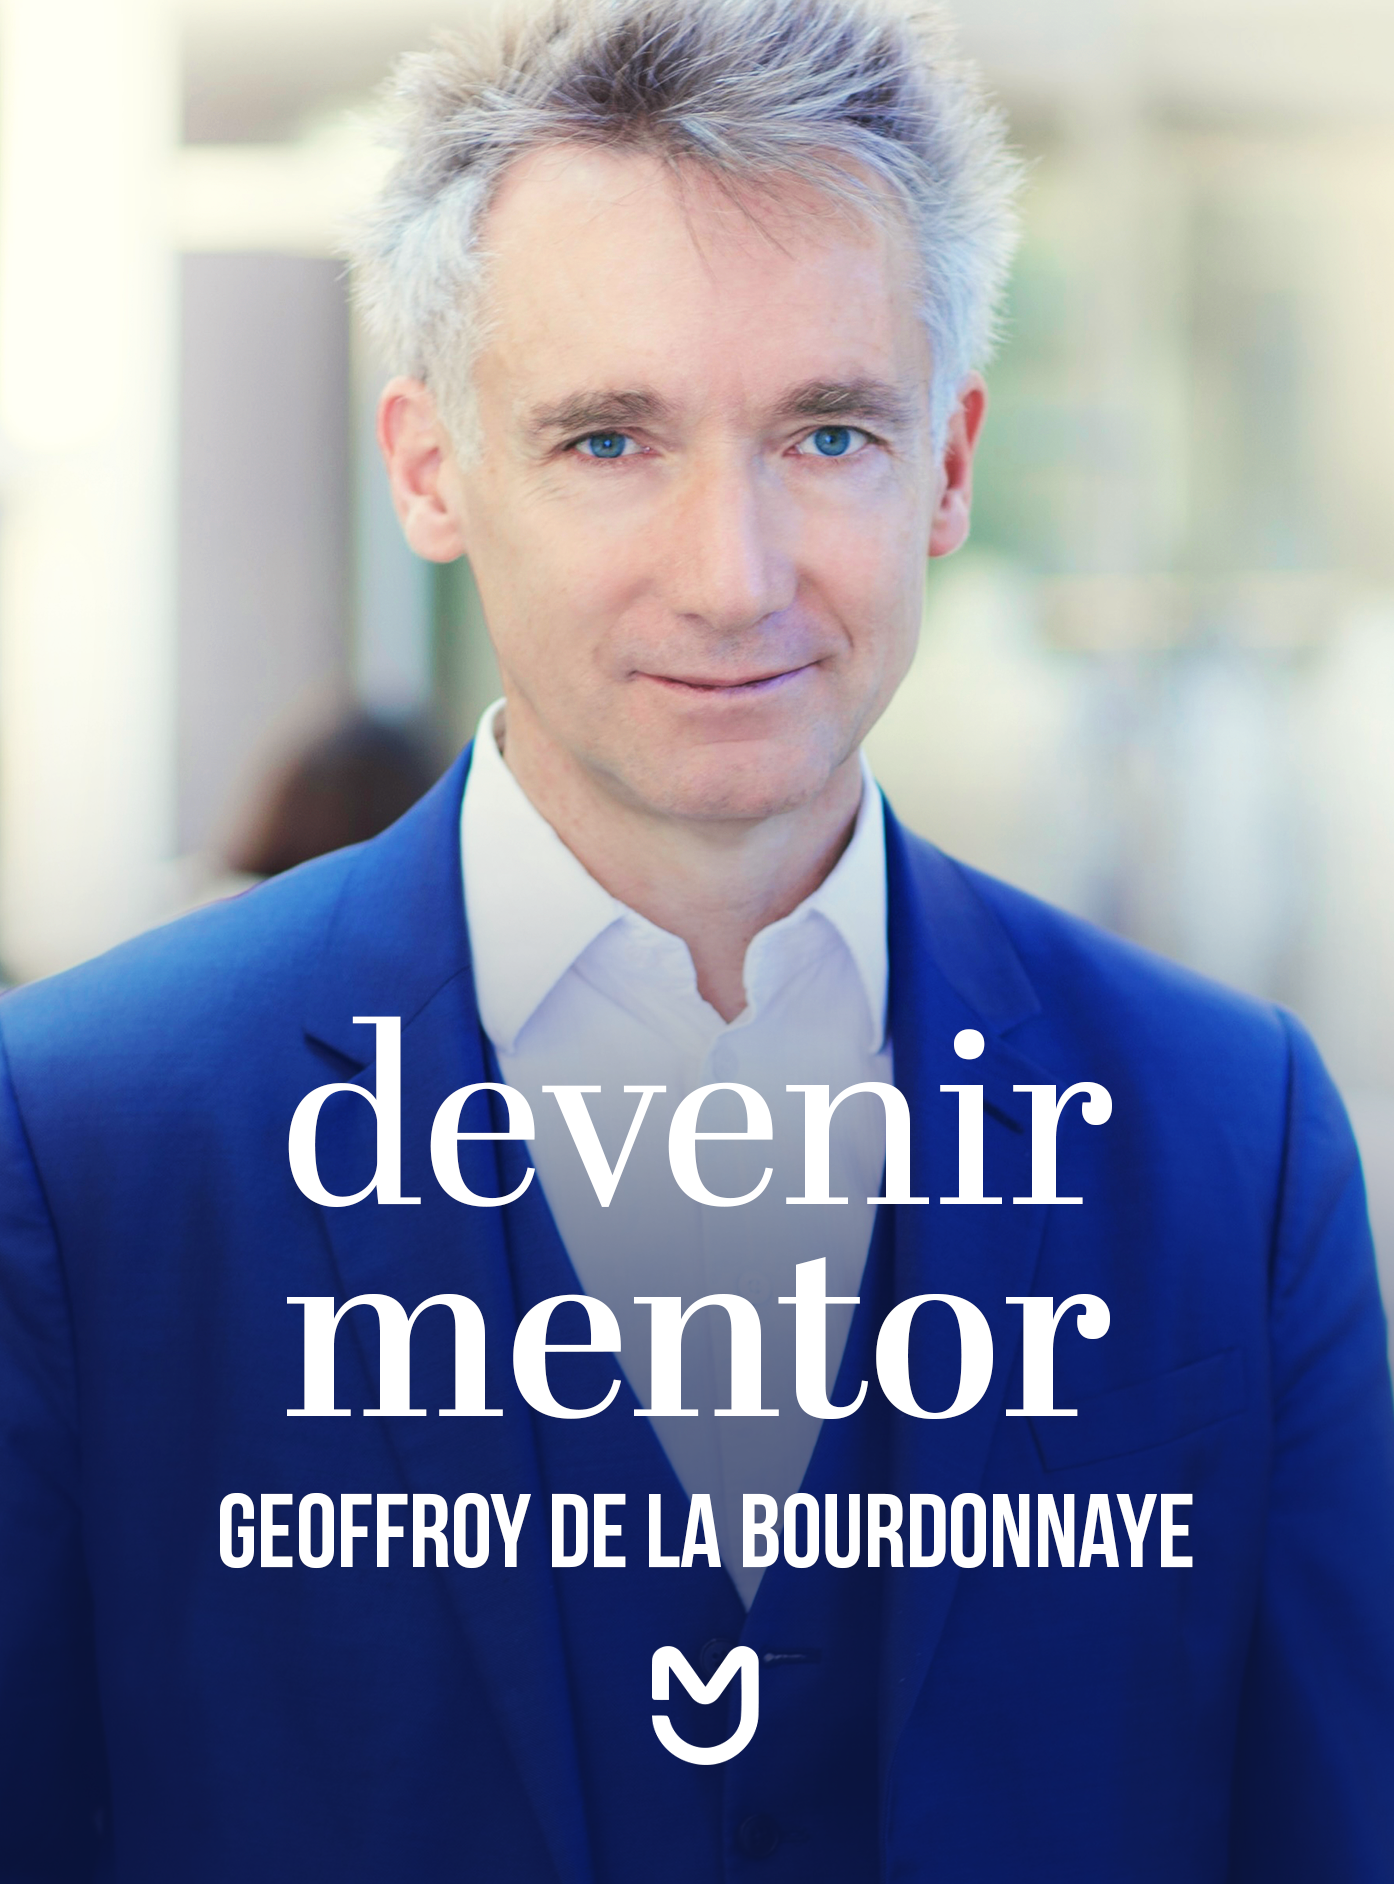 Geoffroy de la Bourdonnaye, devenir mentor